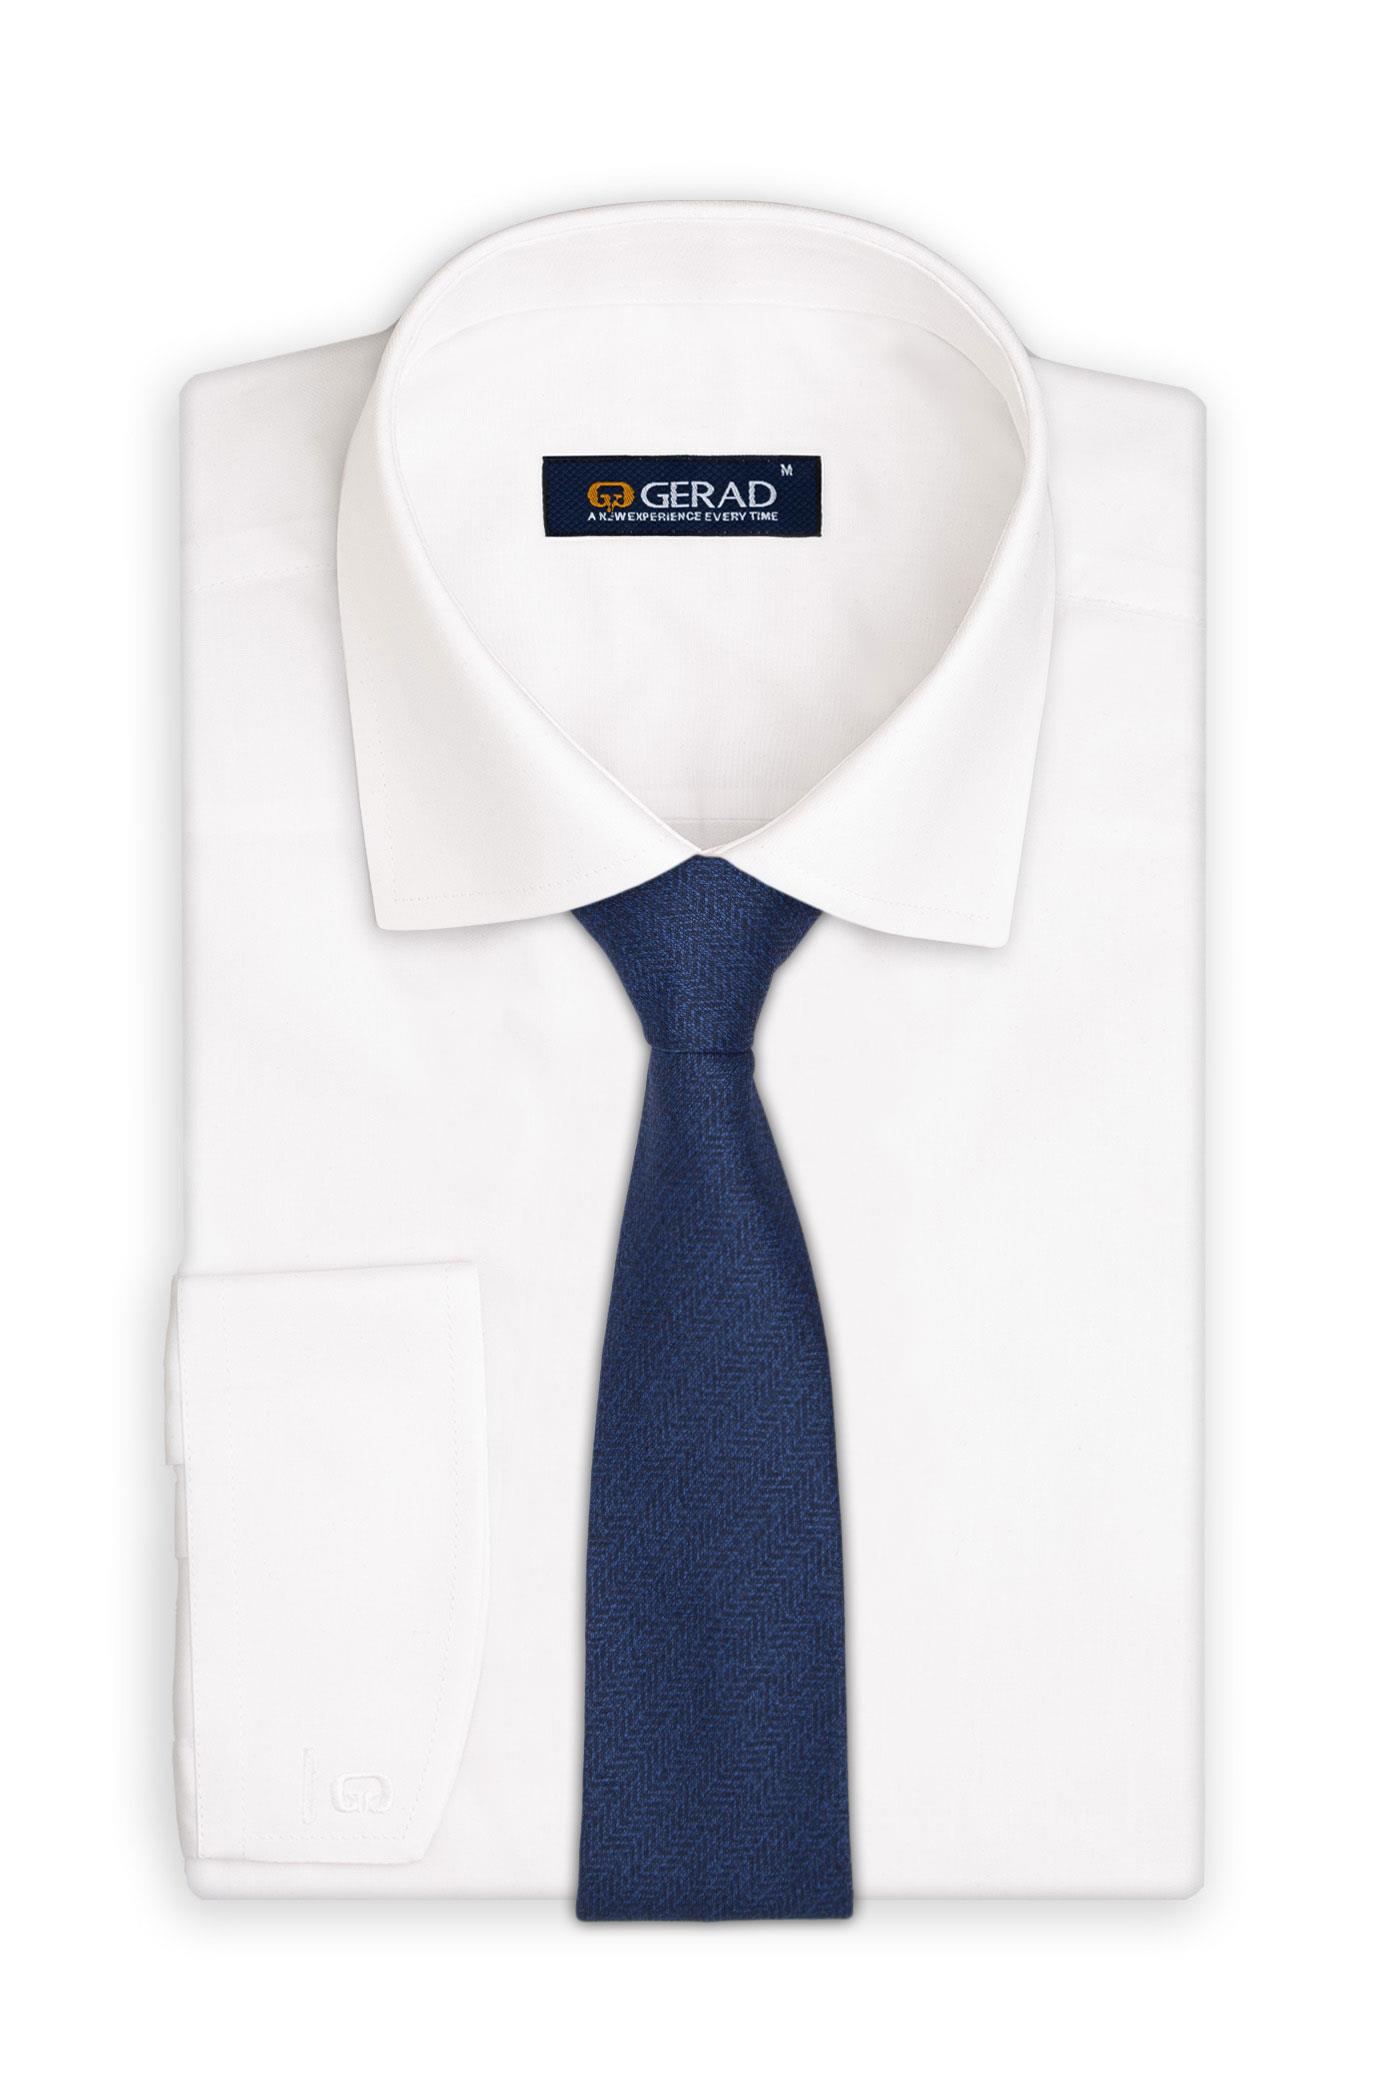 کراوات پوشت دار 200014